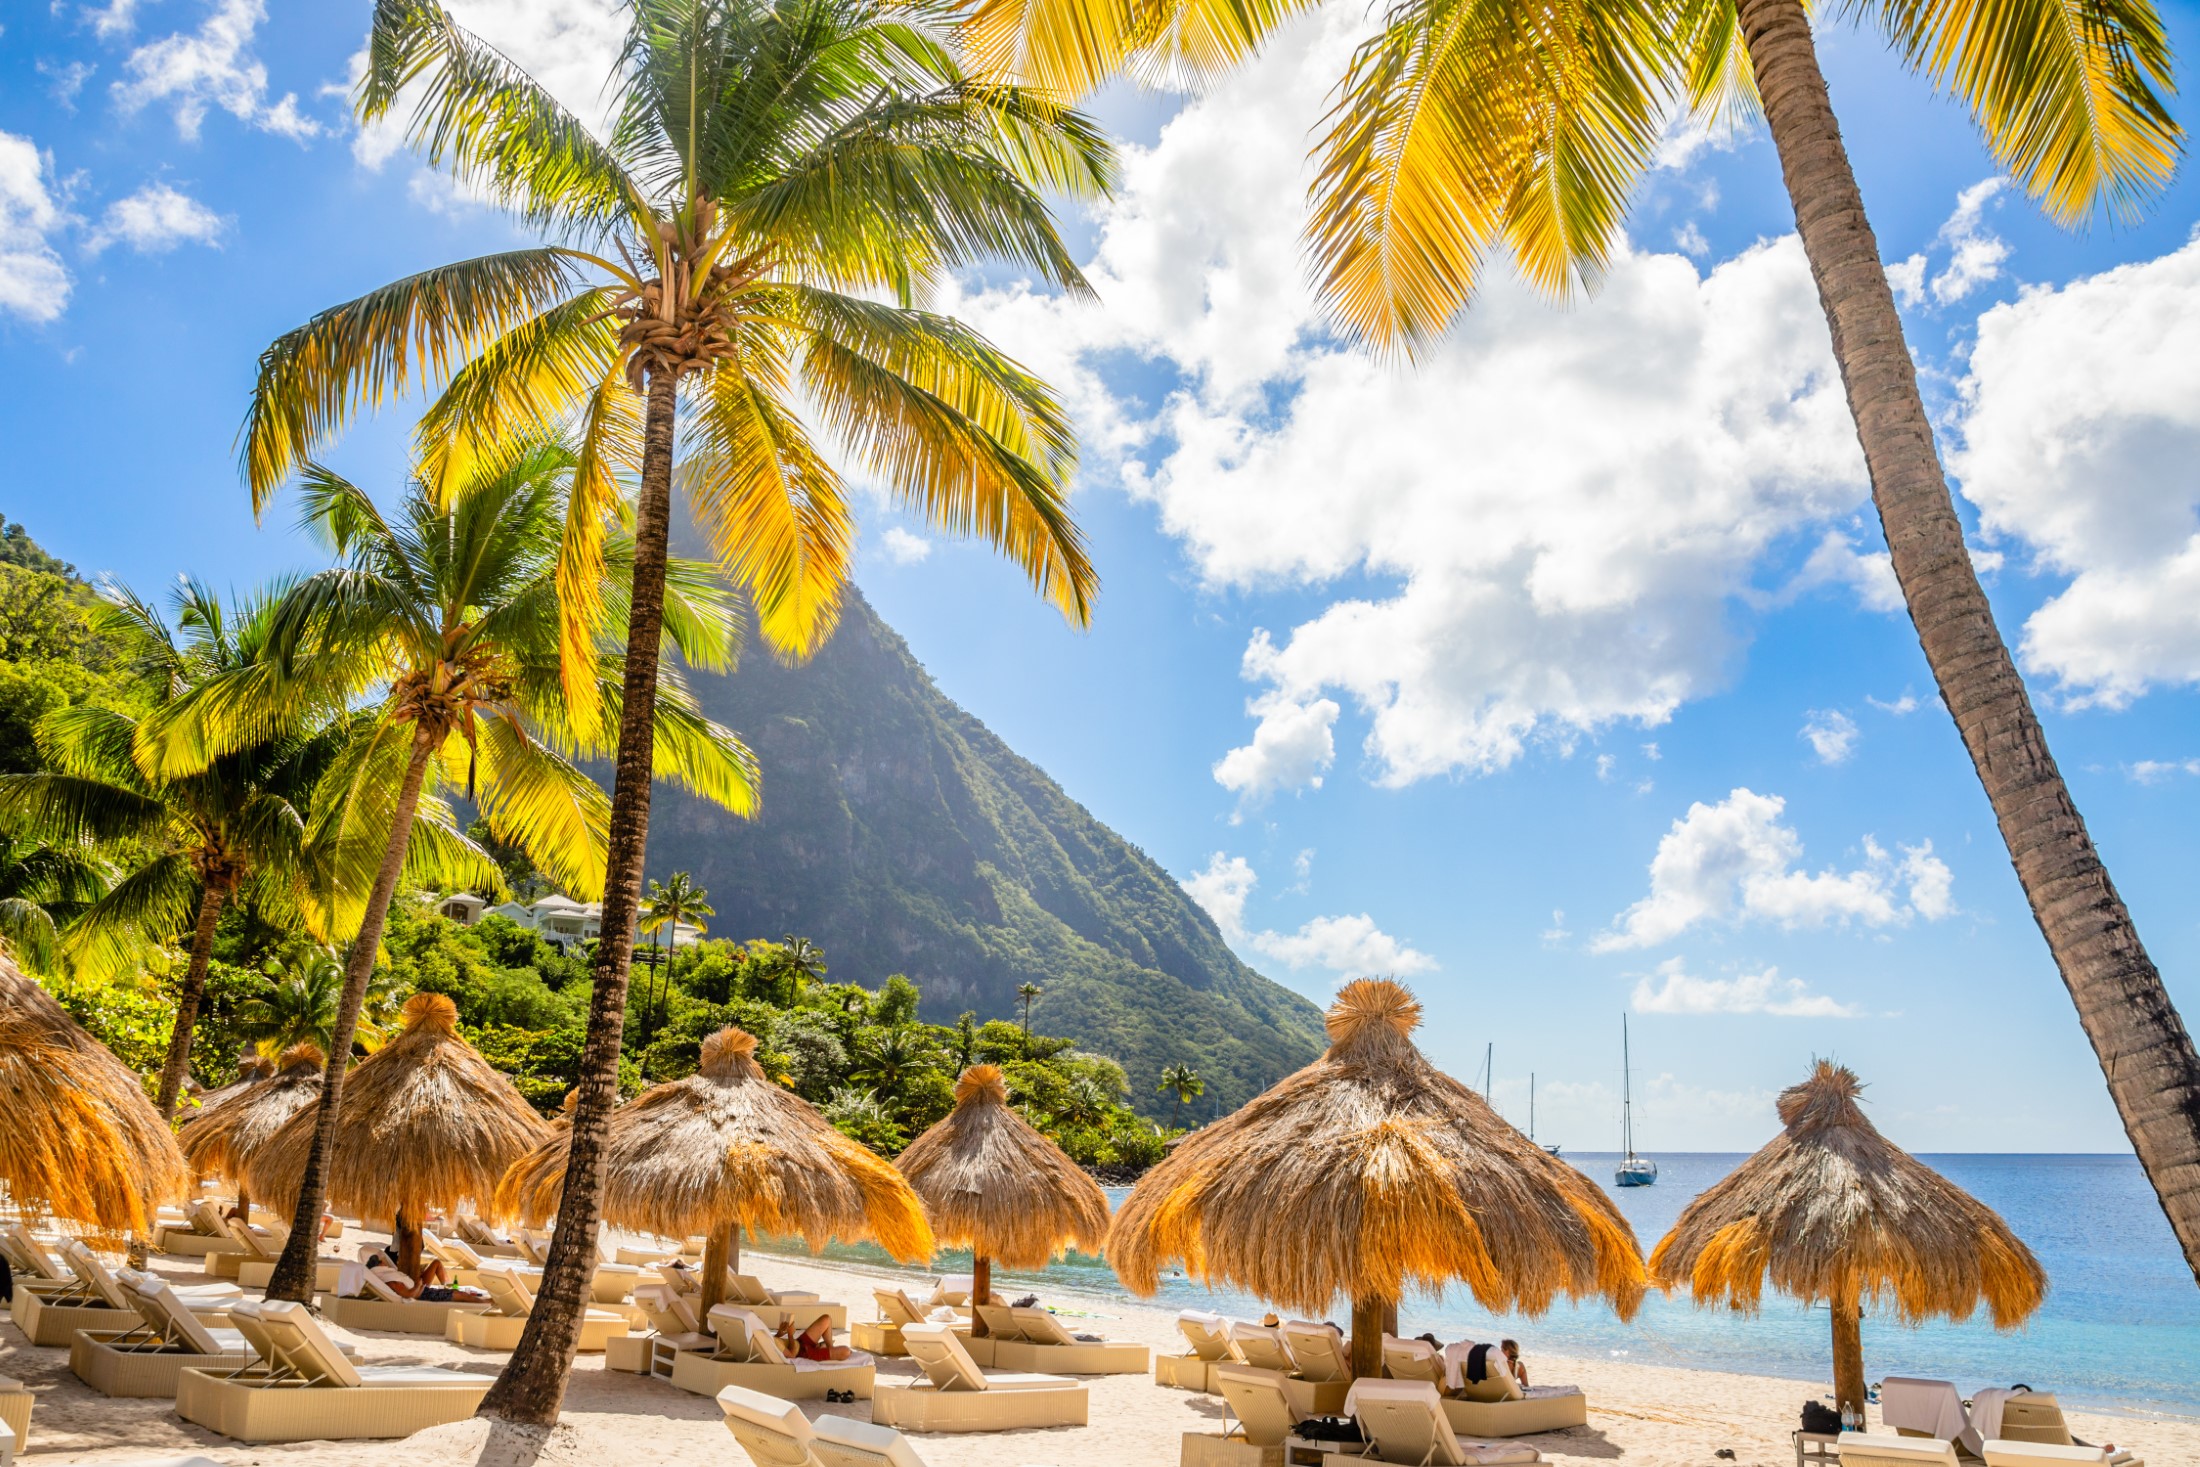 Karaibska plaża z palmami i słomianymi parasolami na brzegu z górą Gros Piton w tle, plaża Sugar, Saint Lucia